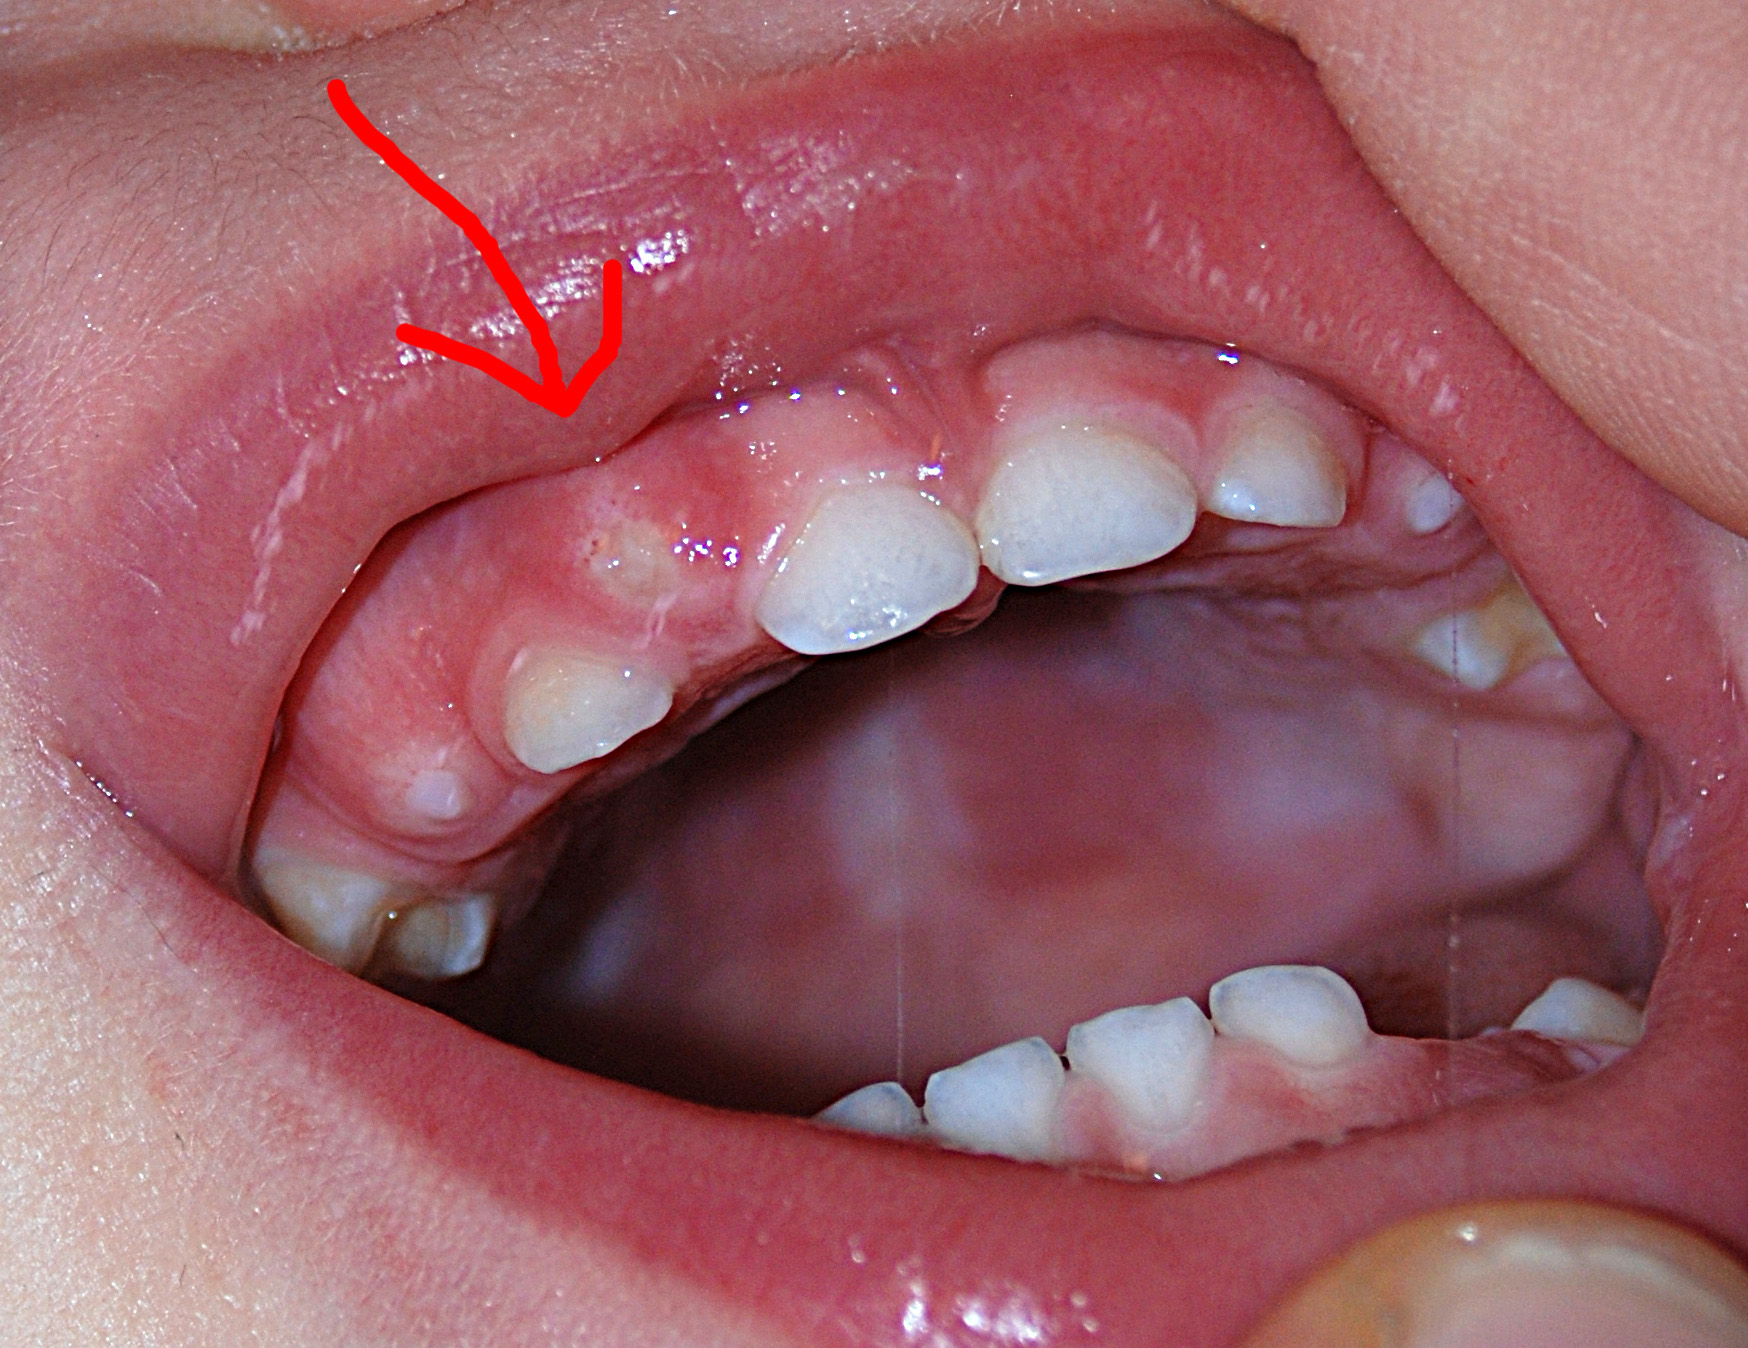 У ребенка растет зуб на десне: что делать и как исправить?